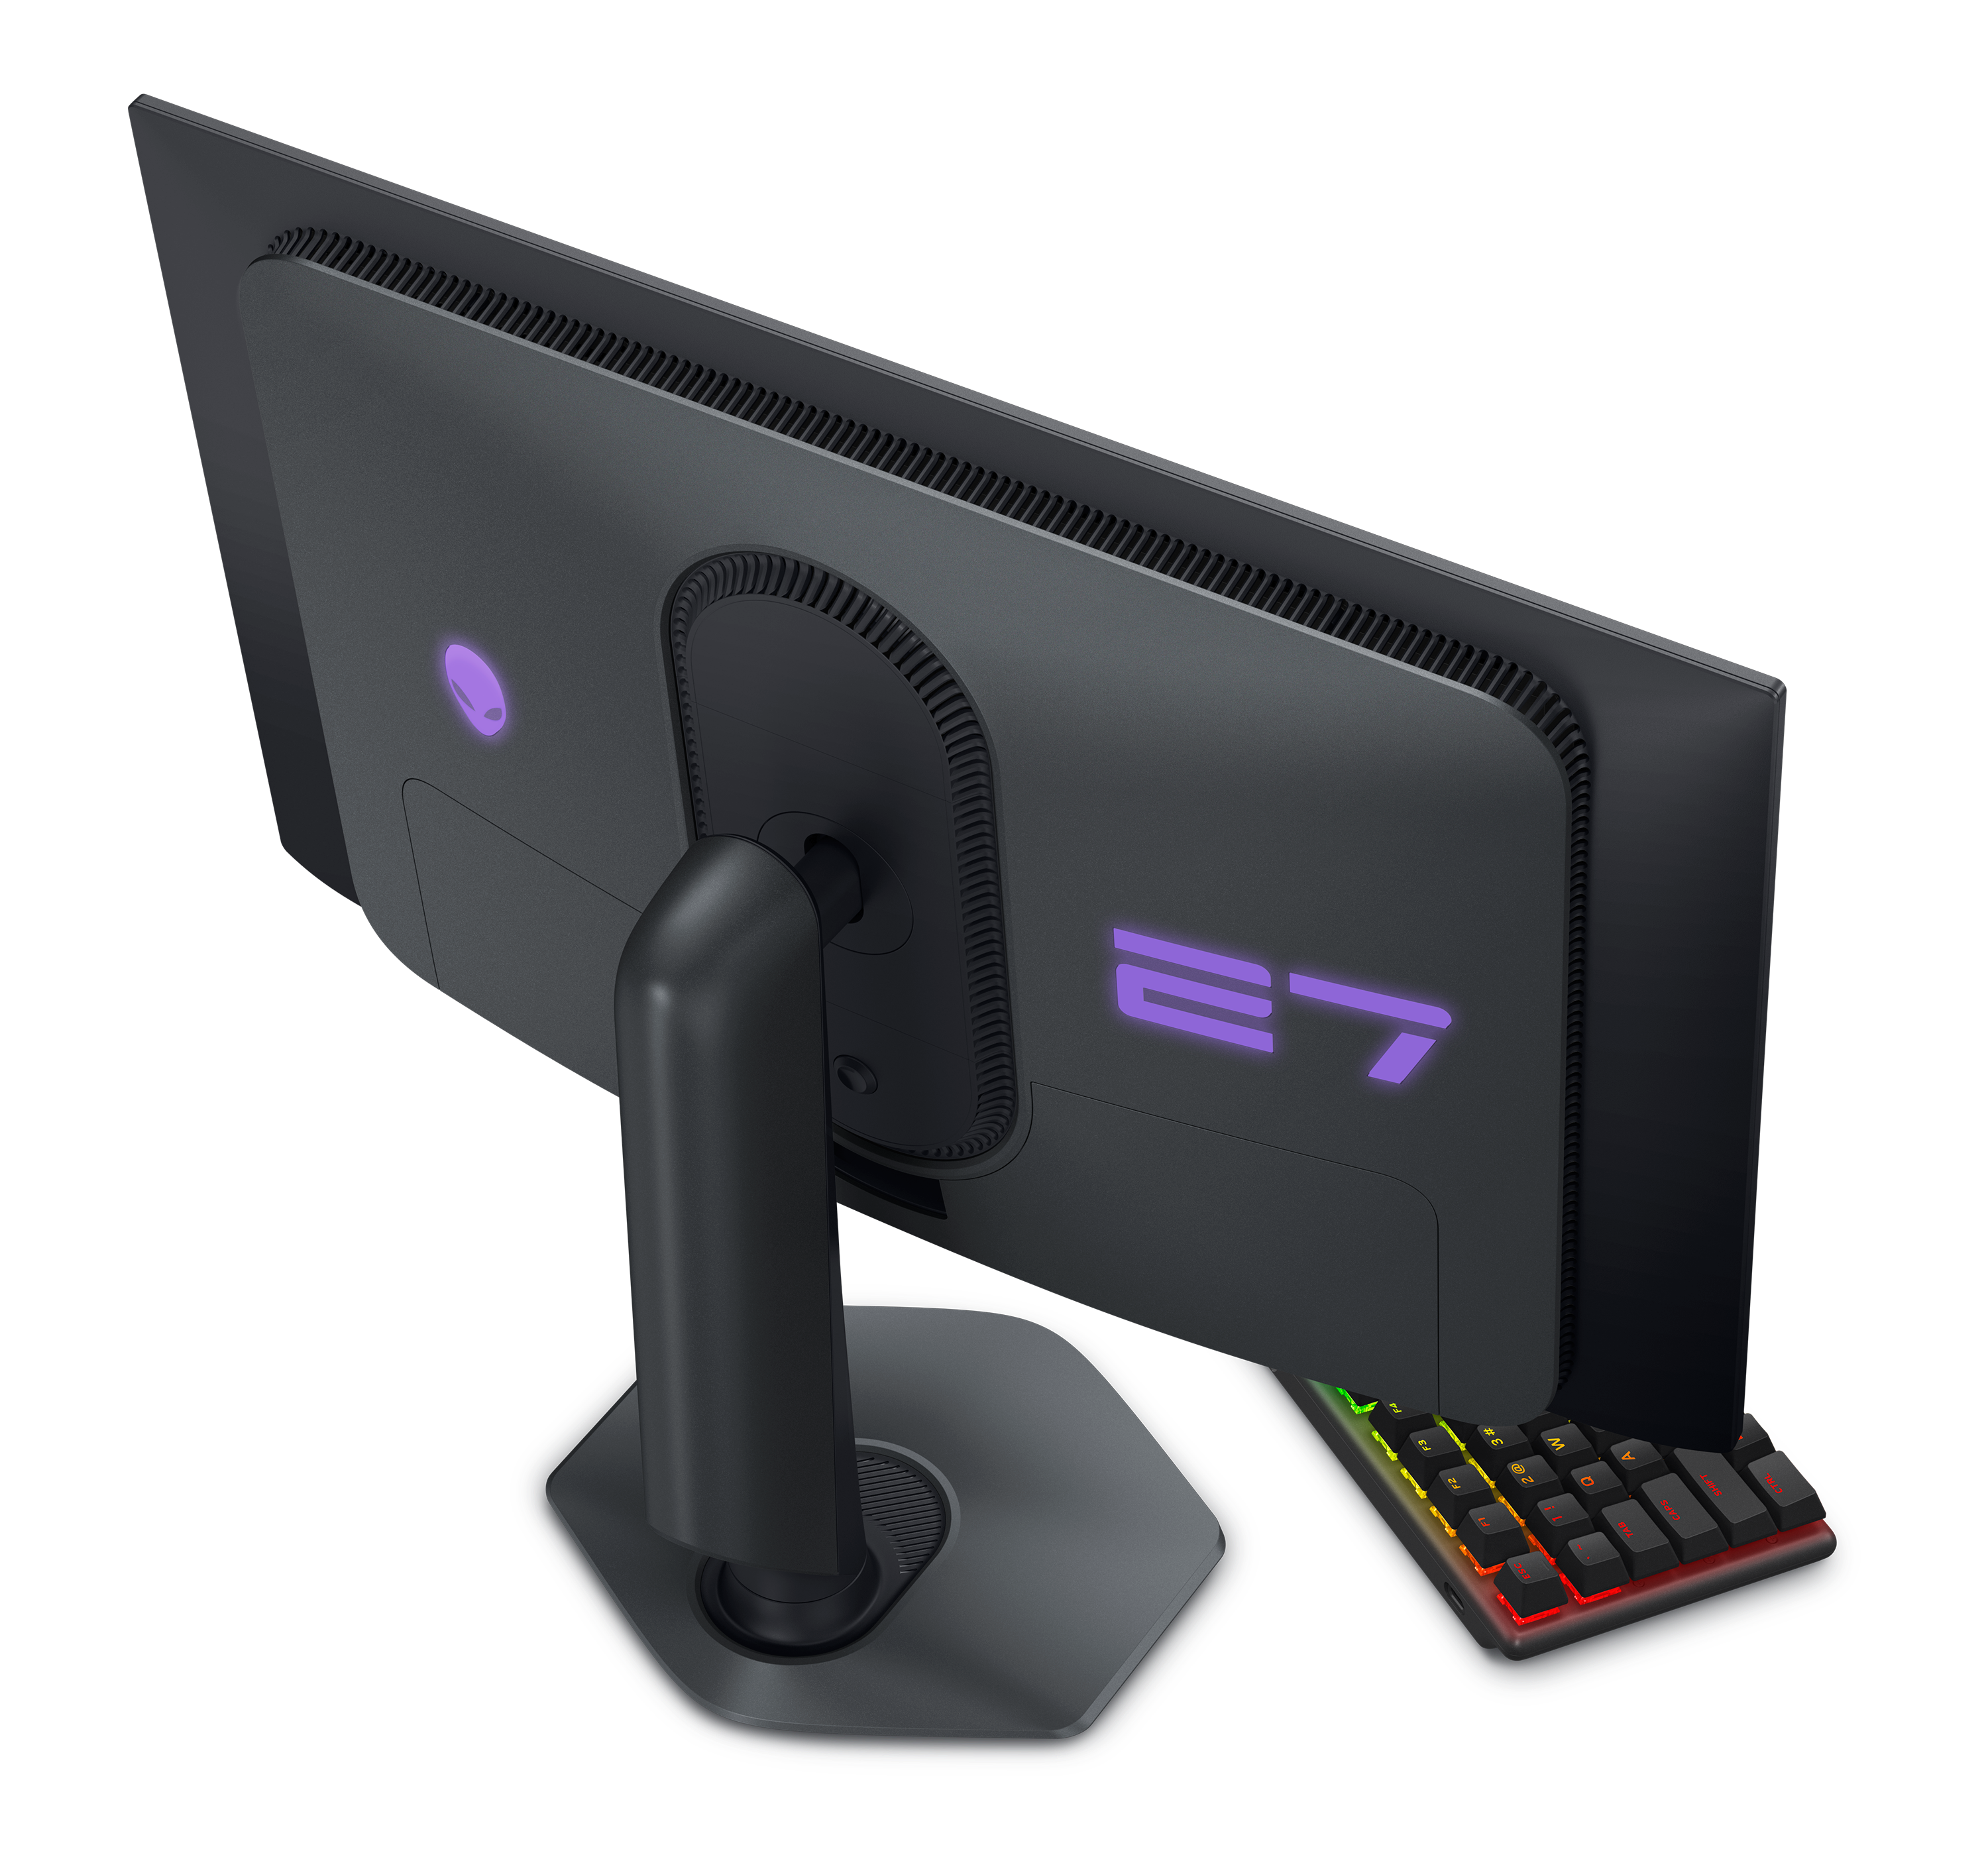 L'impressionnant écran Alienware 25 en 240 Hz tombe à 279 € grâce à une ODR